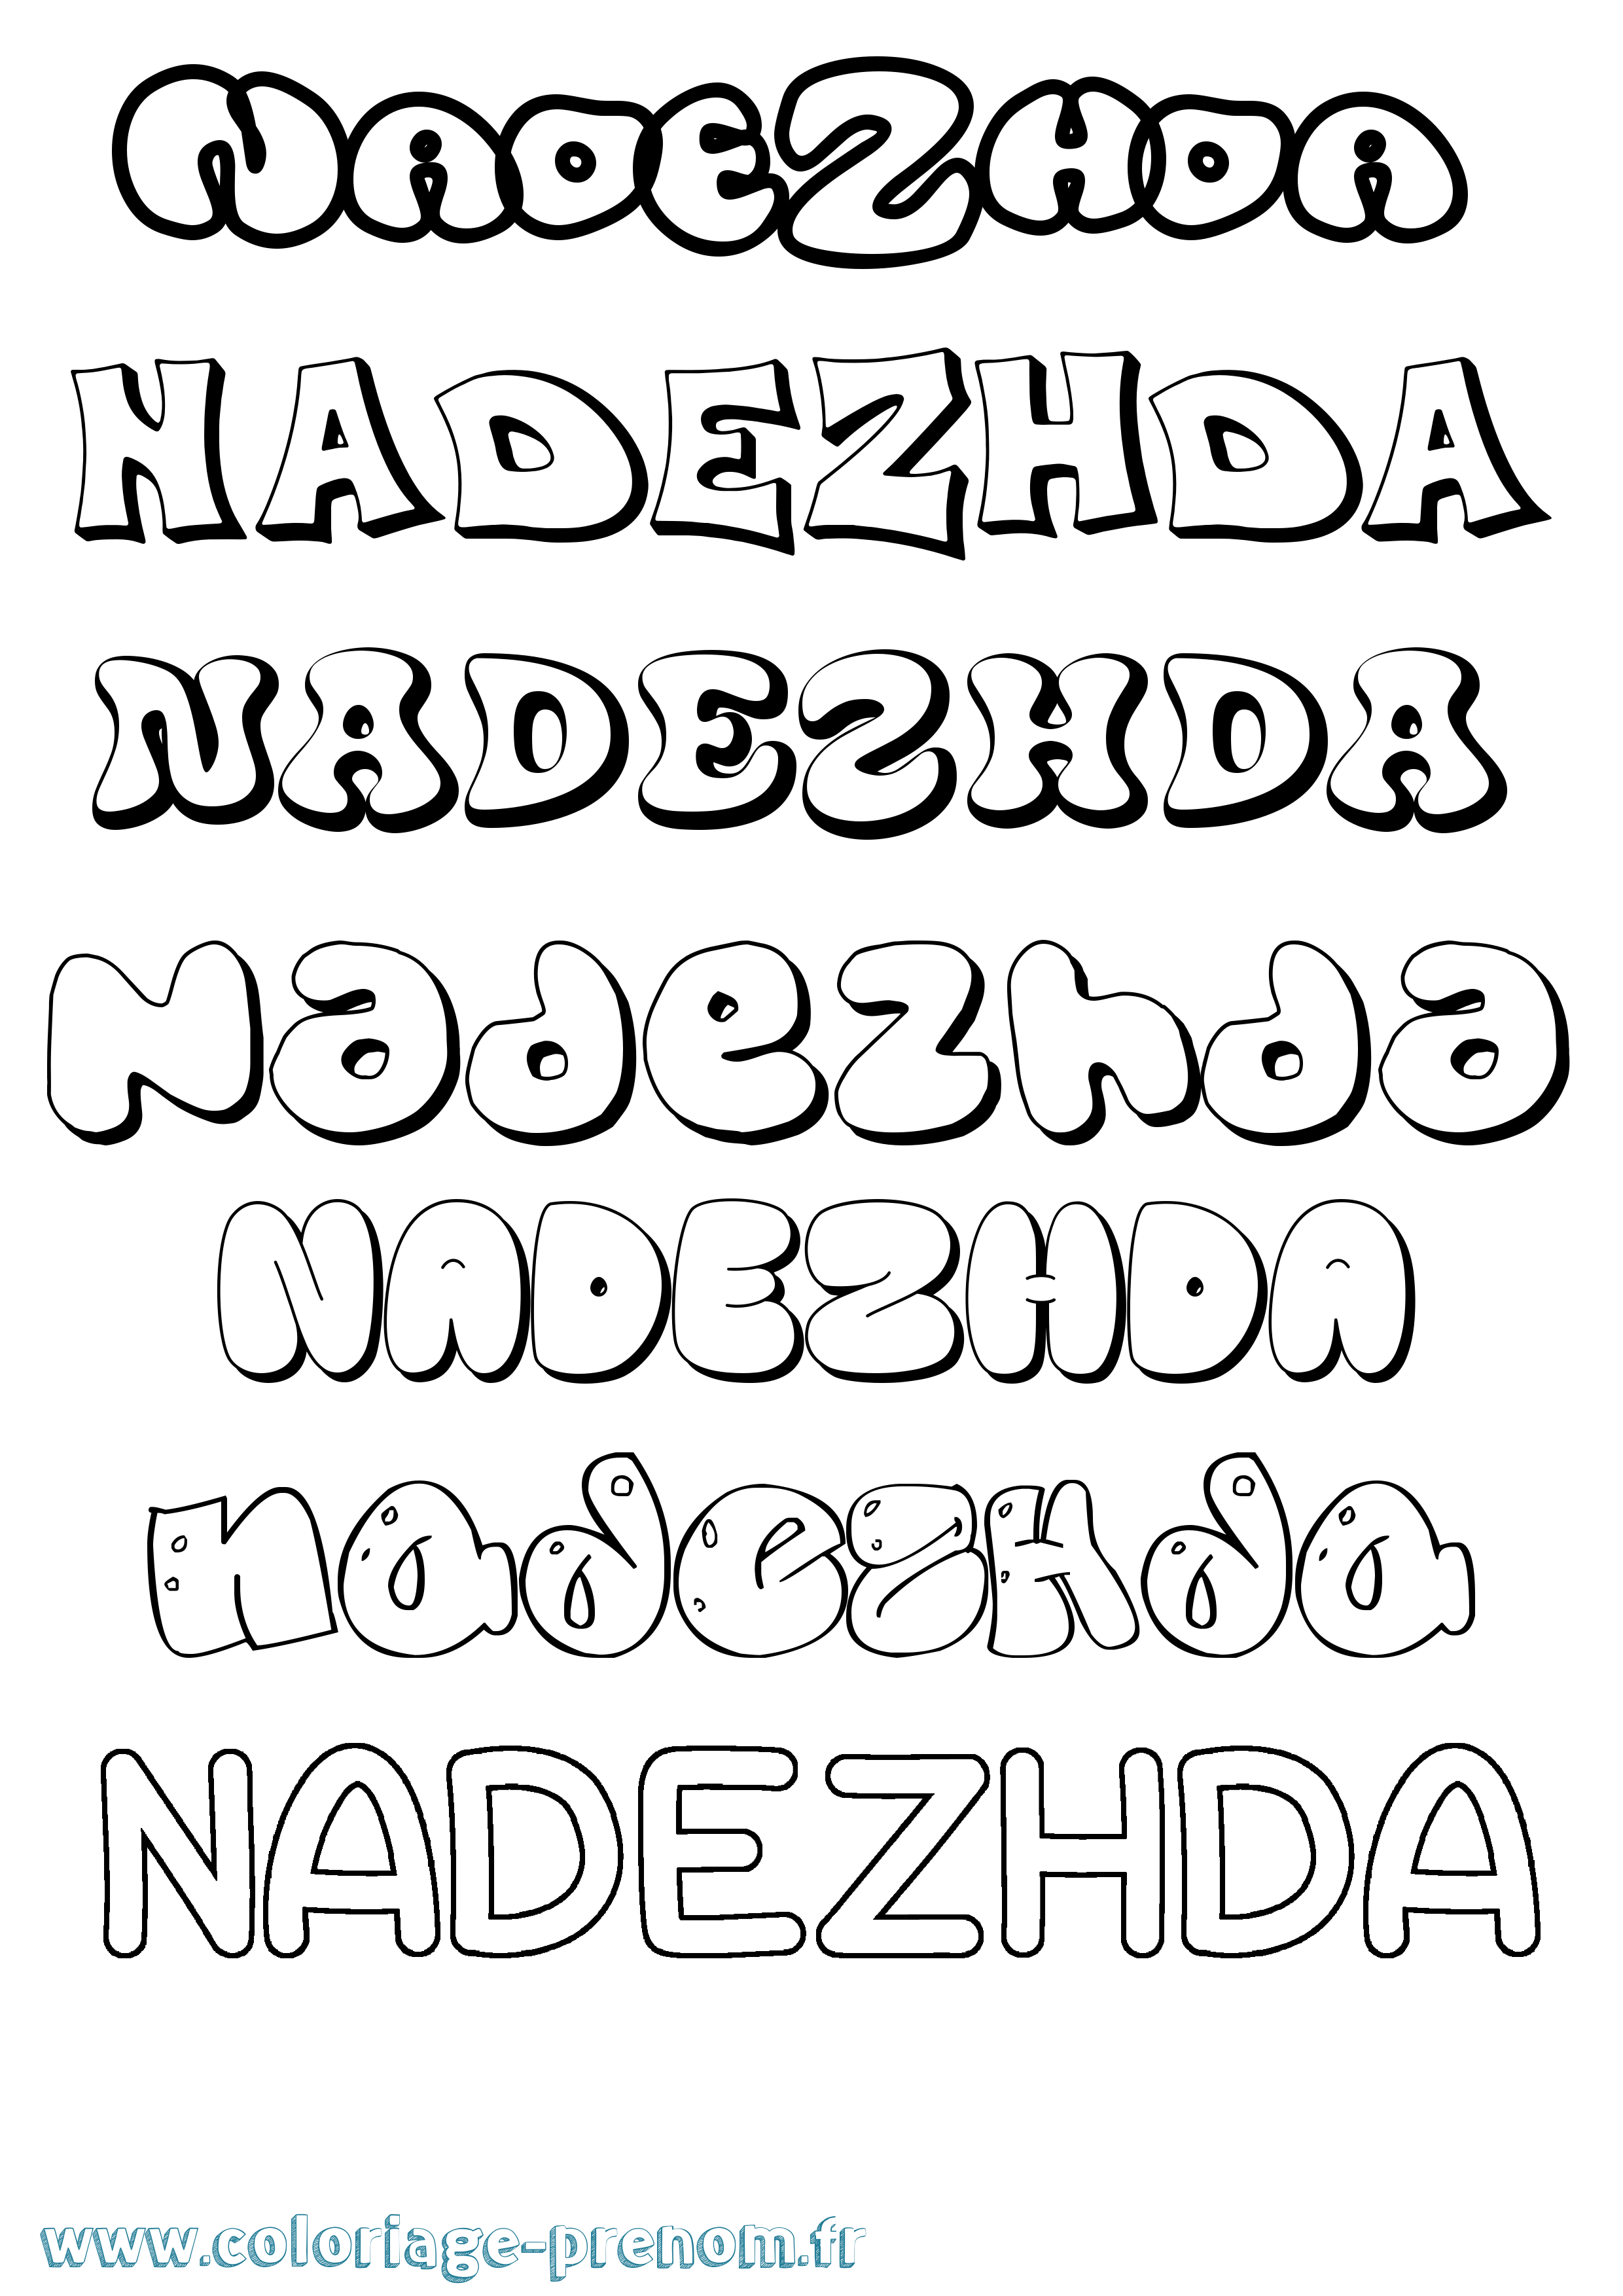 Coloriage prénom Nadezhda Bubble